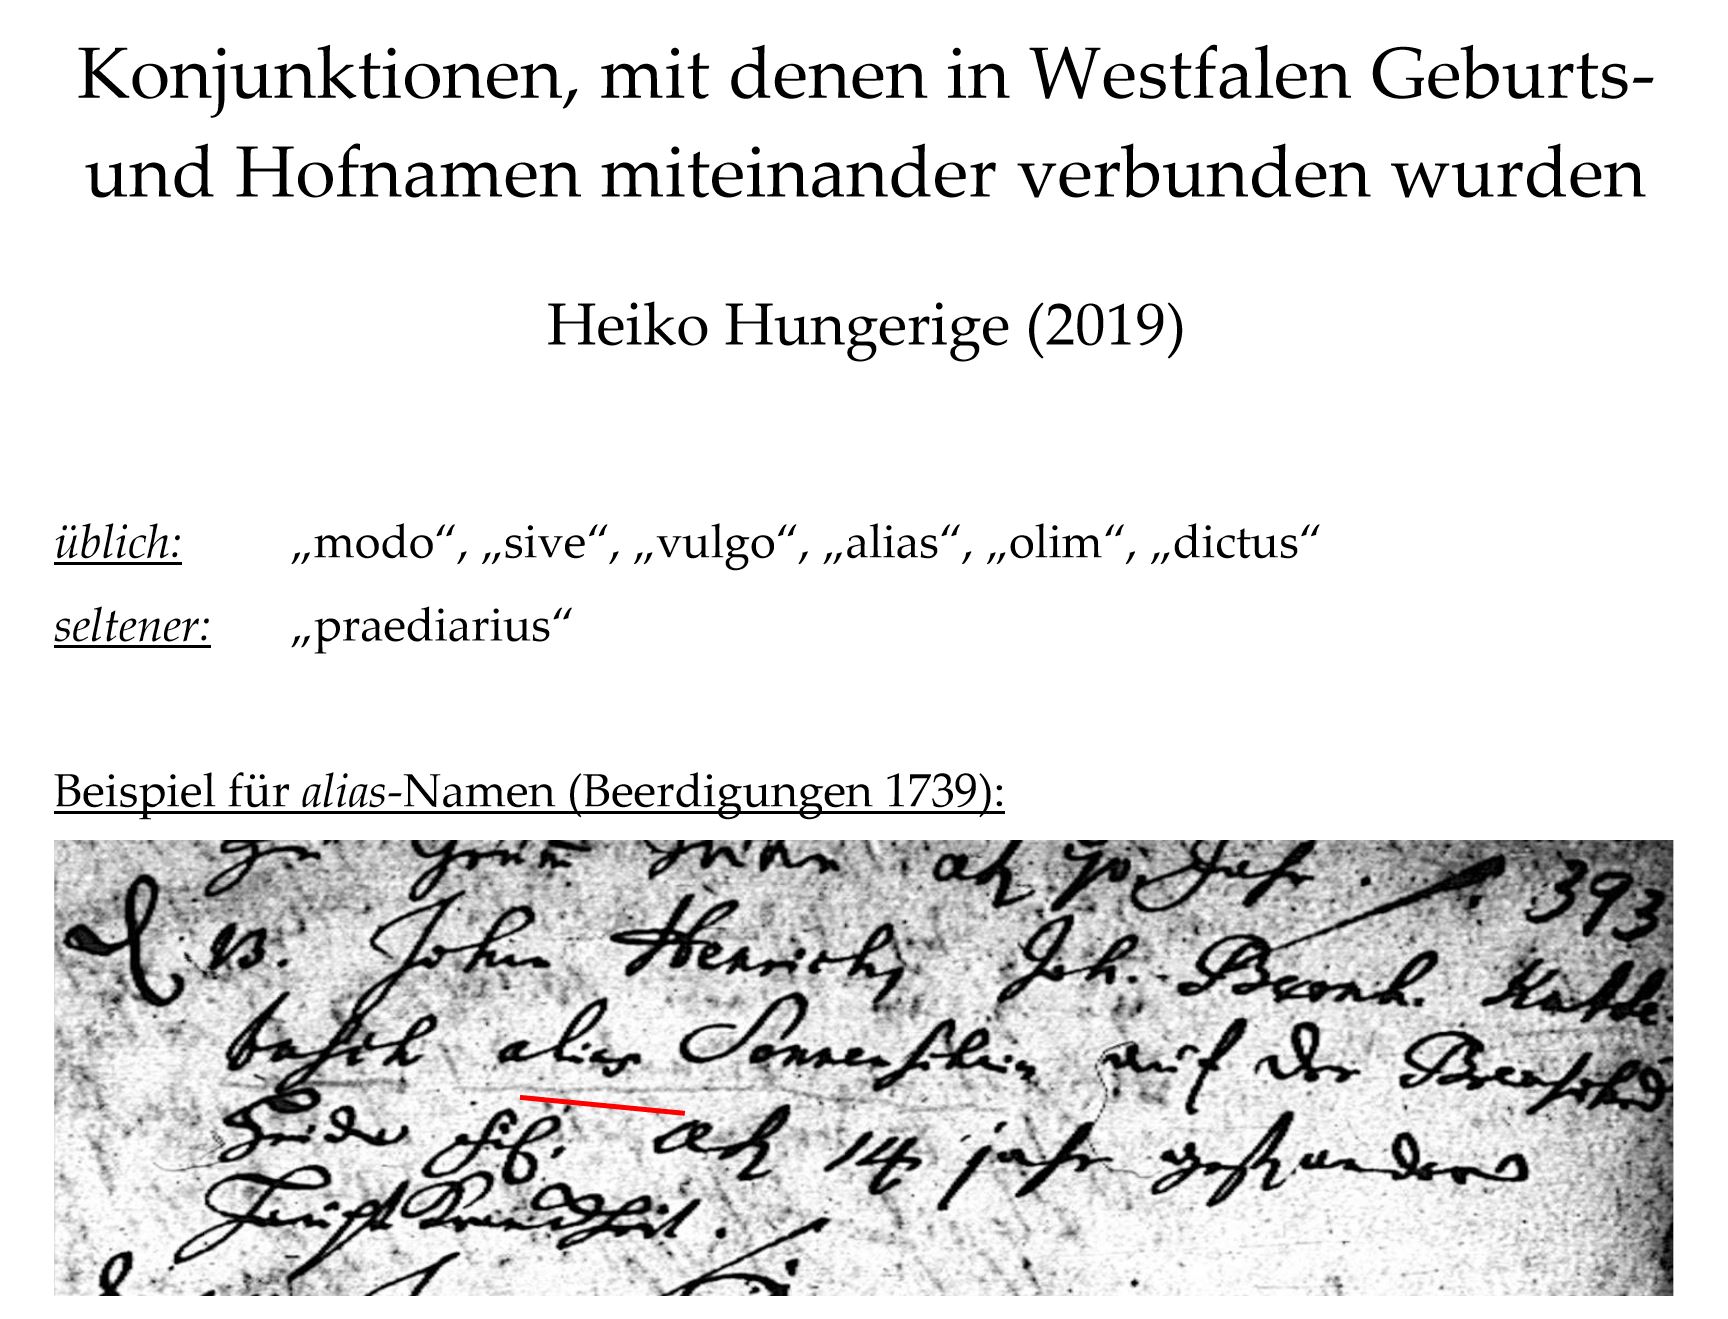 Hungerige (2019), Konjunktionen, mit denen in Westfalen Geburts- und Hofnamen miteinander verbunden wurden